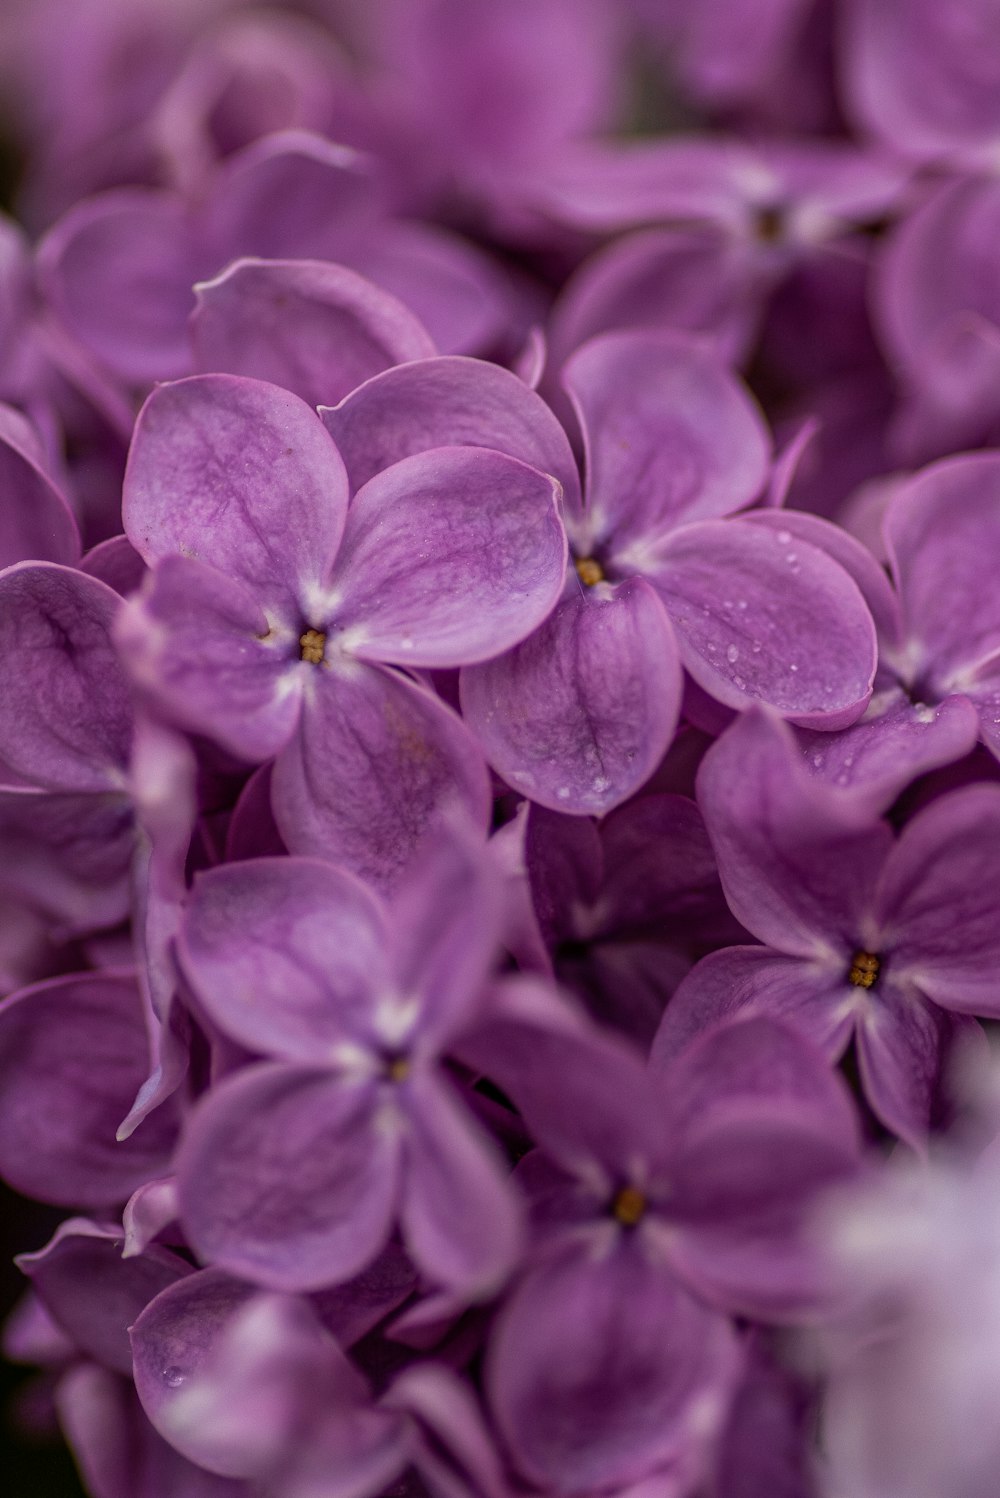 fotografia em close-up de flores de pétalas roxas